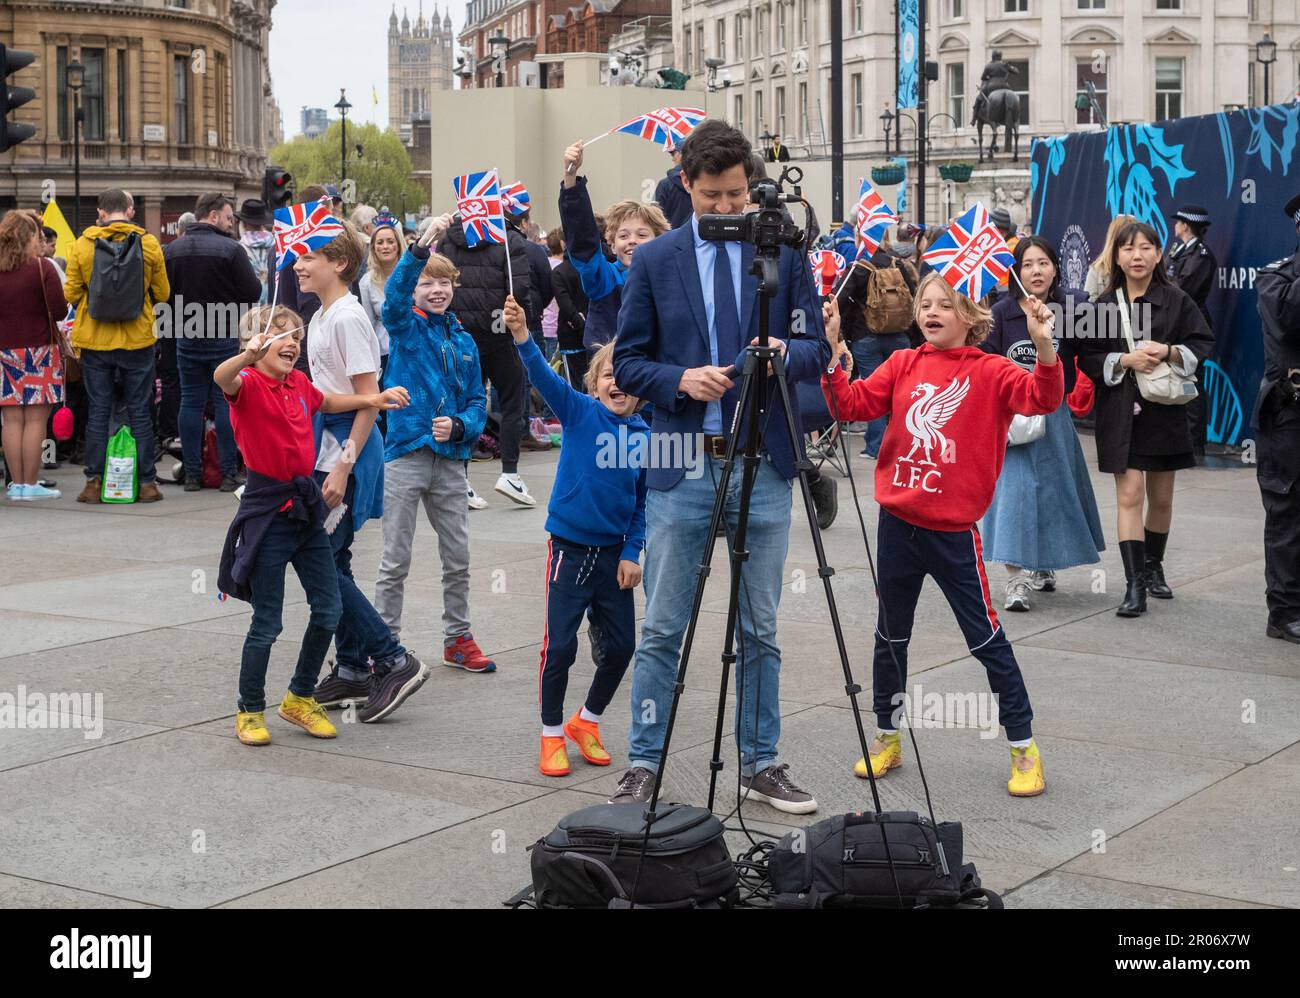 Au cœur de Trafalgar Square à Londres, un journaliste de la télévision d'informations se trouve devant sa caméra. Derrière lui, un groupe de jeunes enfants dansent et W Banque D'Images